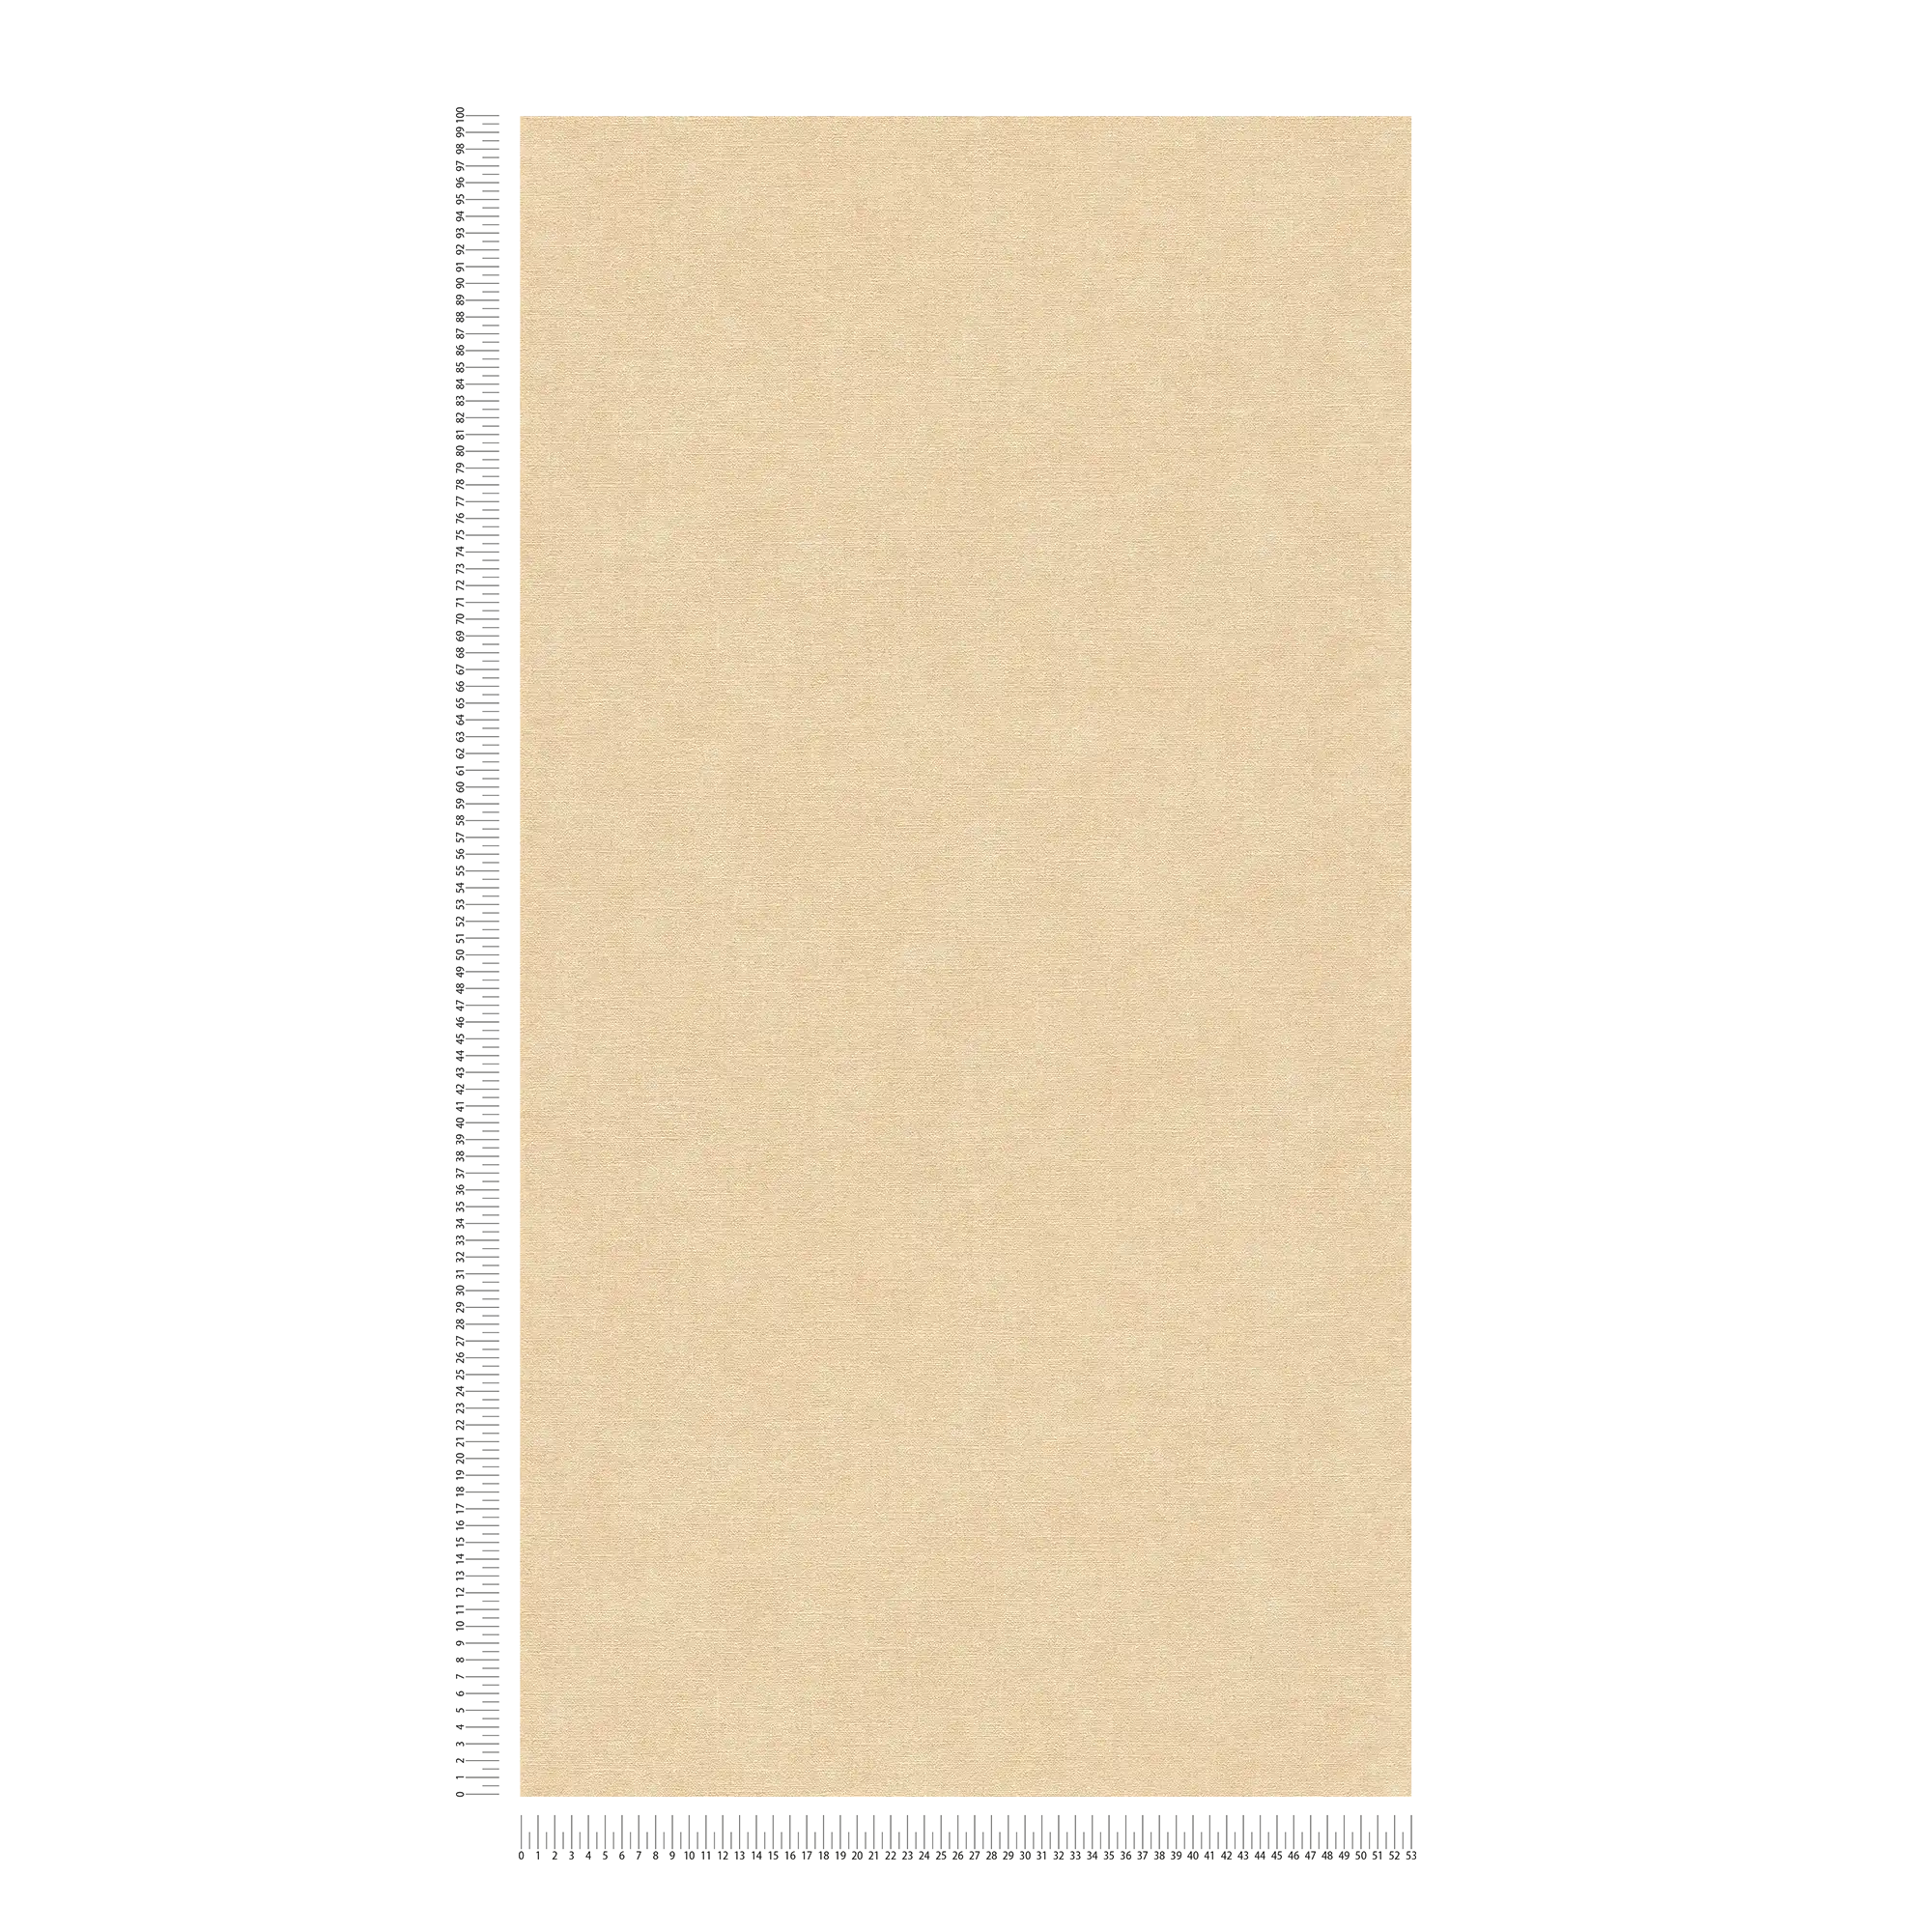             Papel pintado monocolor de tejido-no tejido con aspecto textil - beige, marrón
        